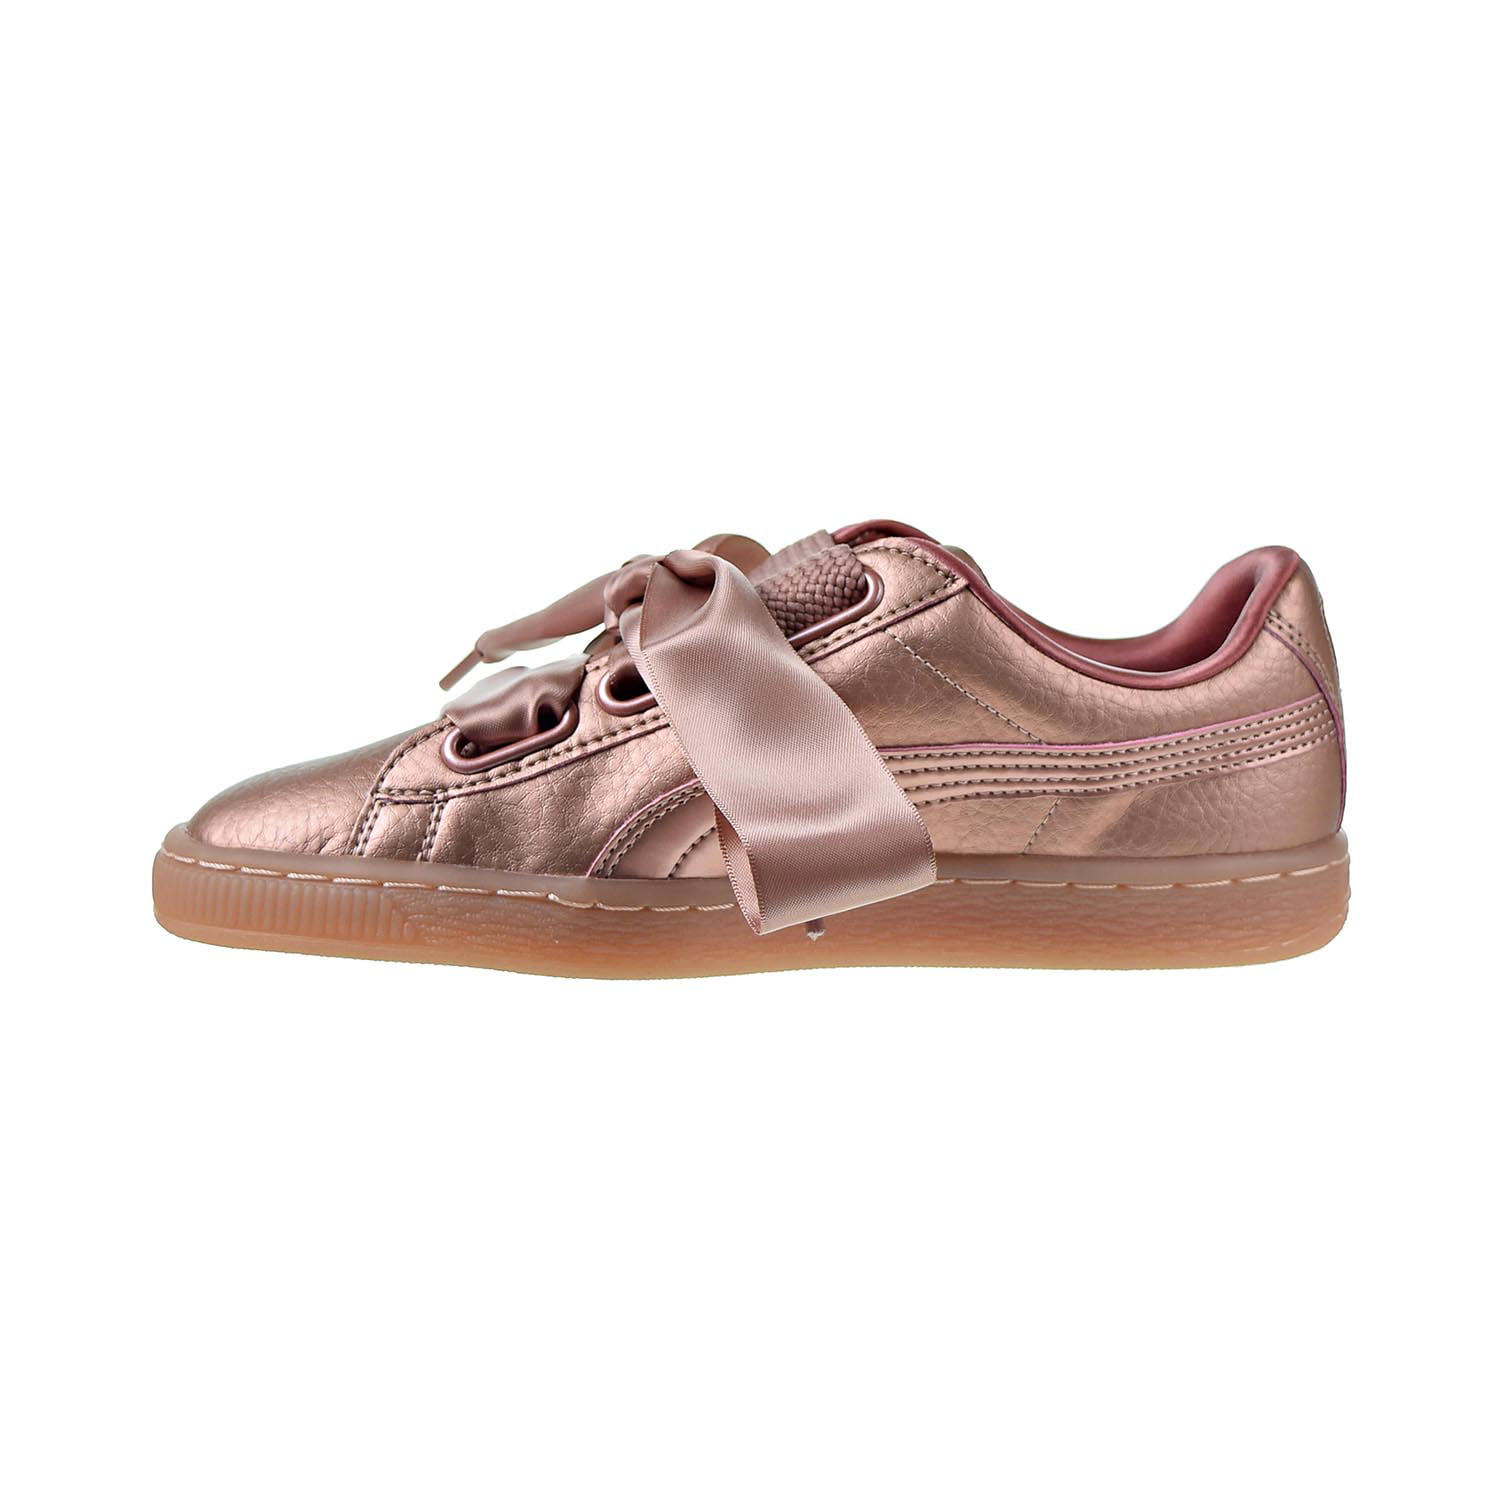 puma heart copper sneaker - Walmart.com